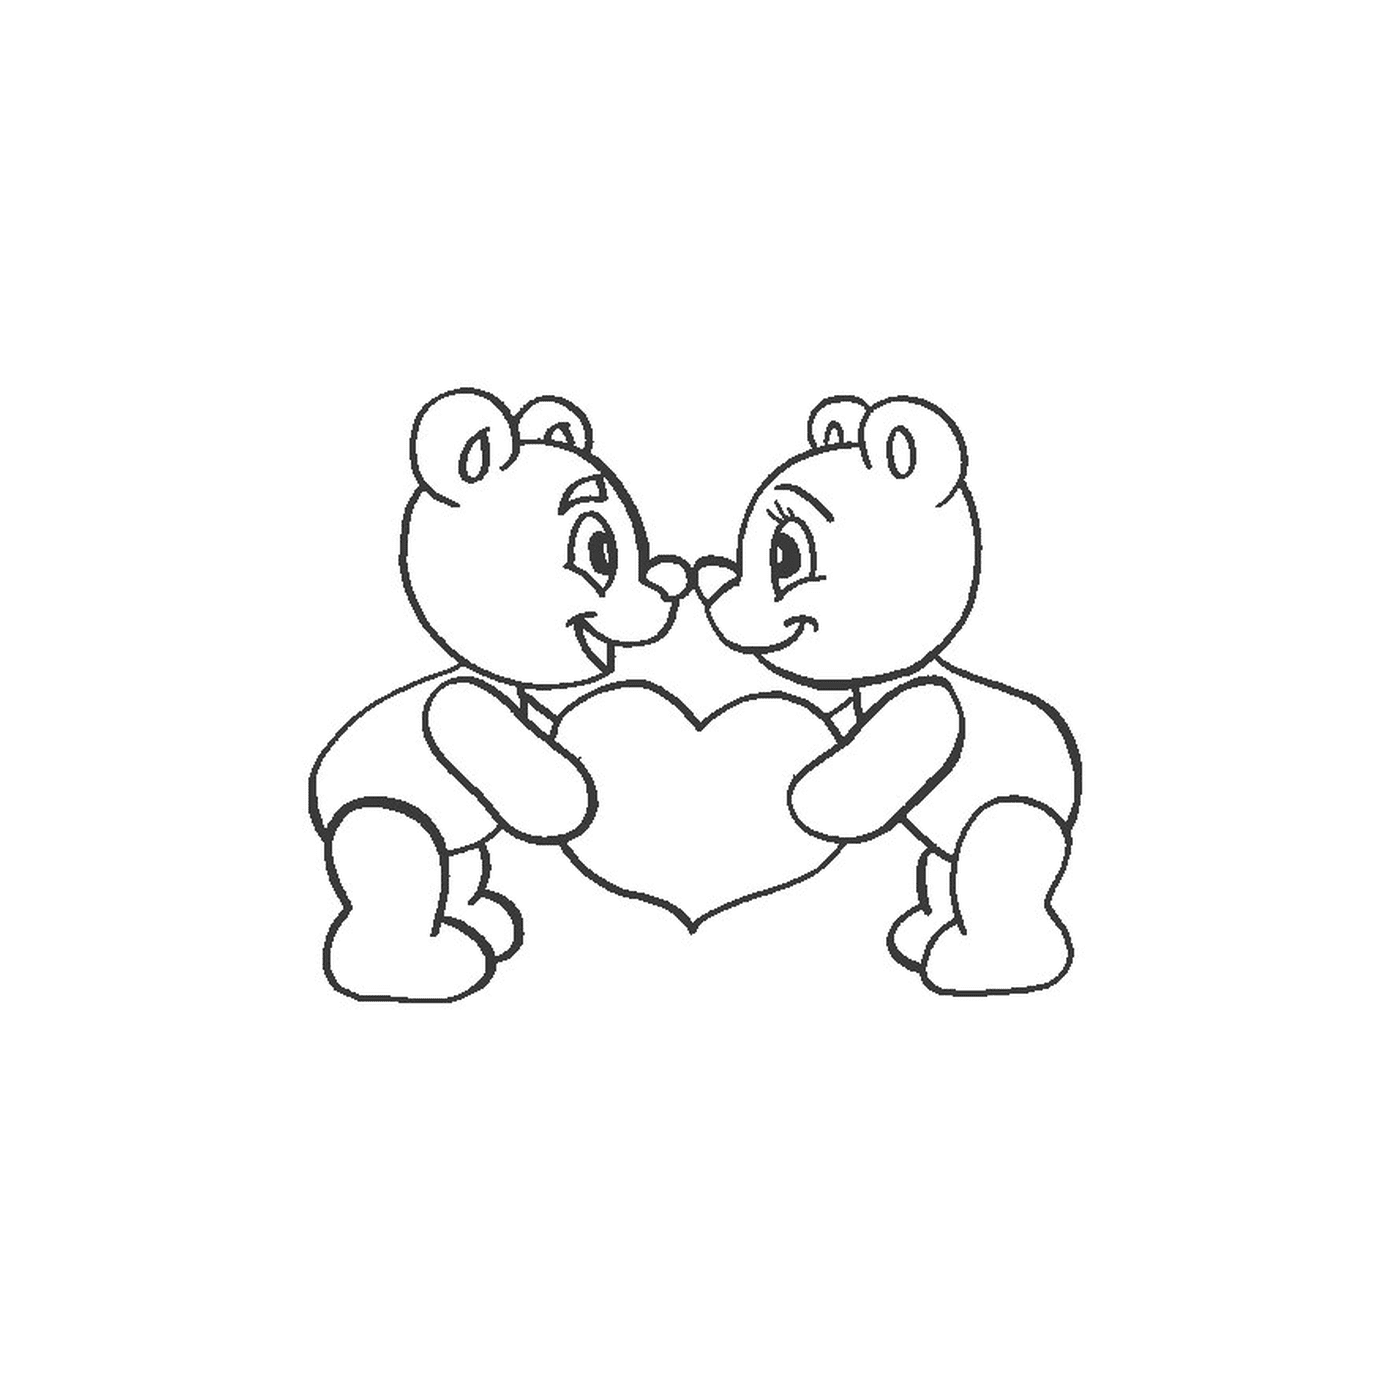   Deux ours en peluche tenant un cœur dans leurs mains 